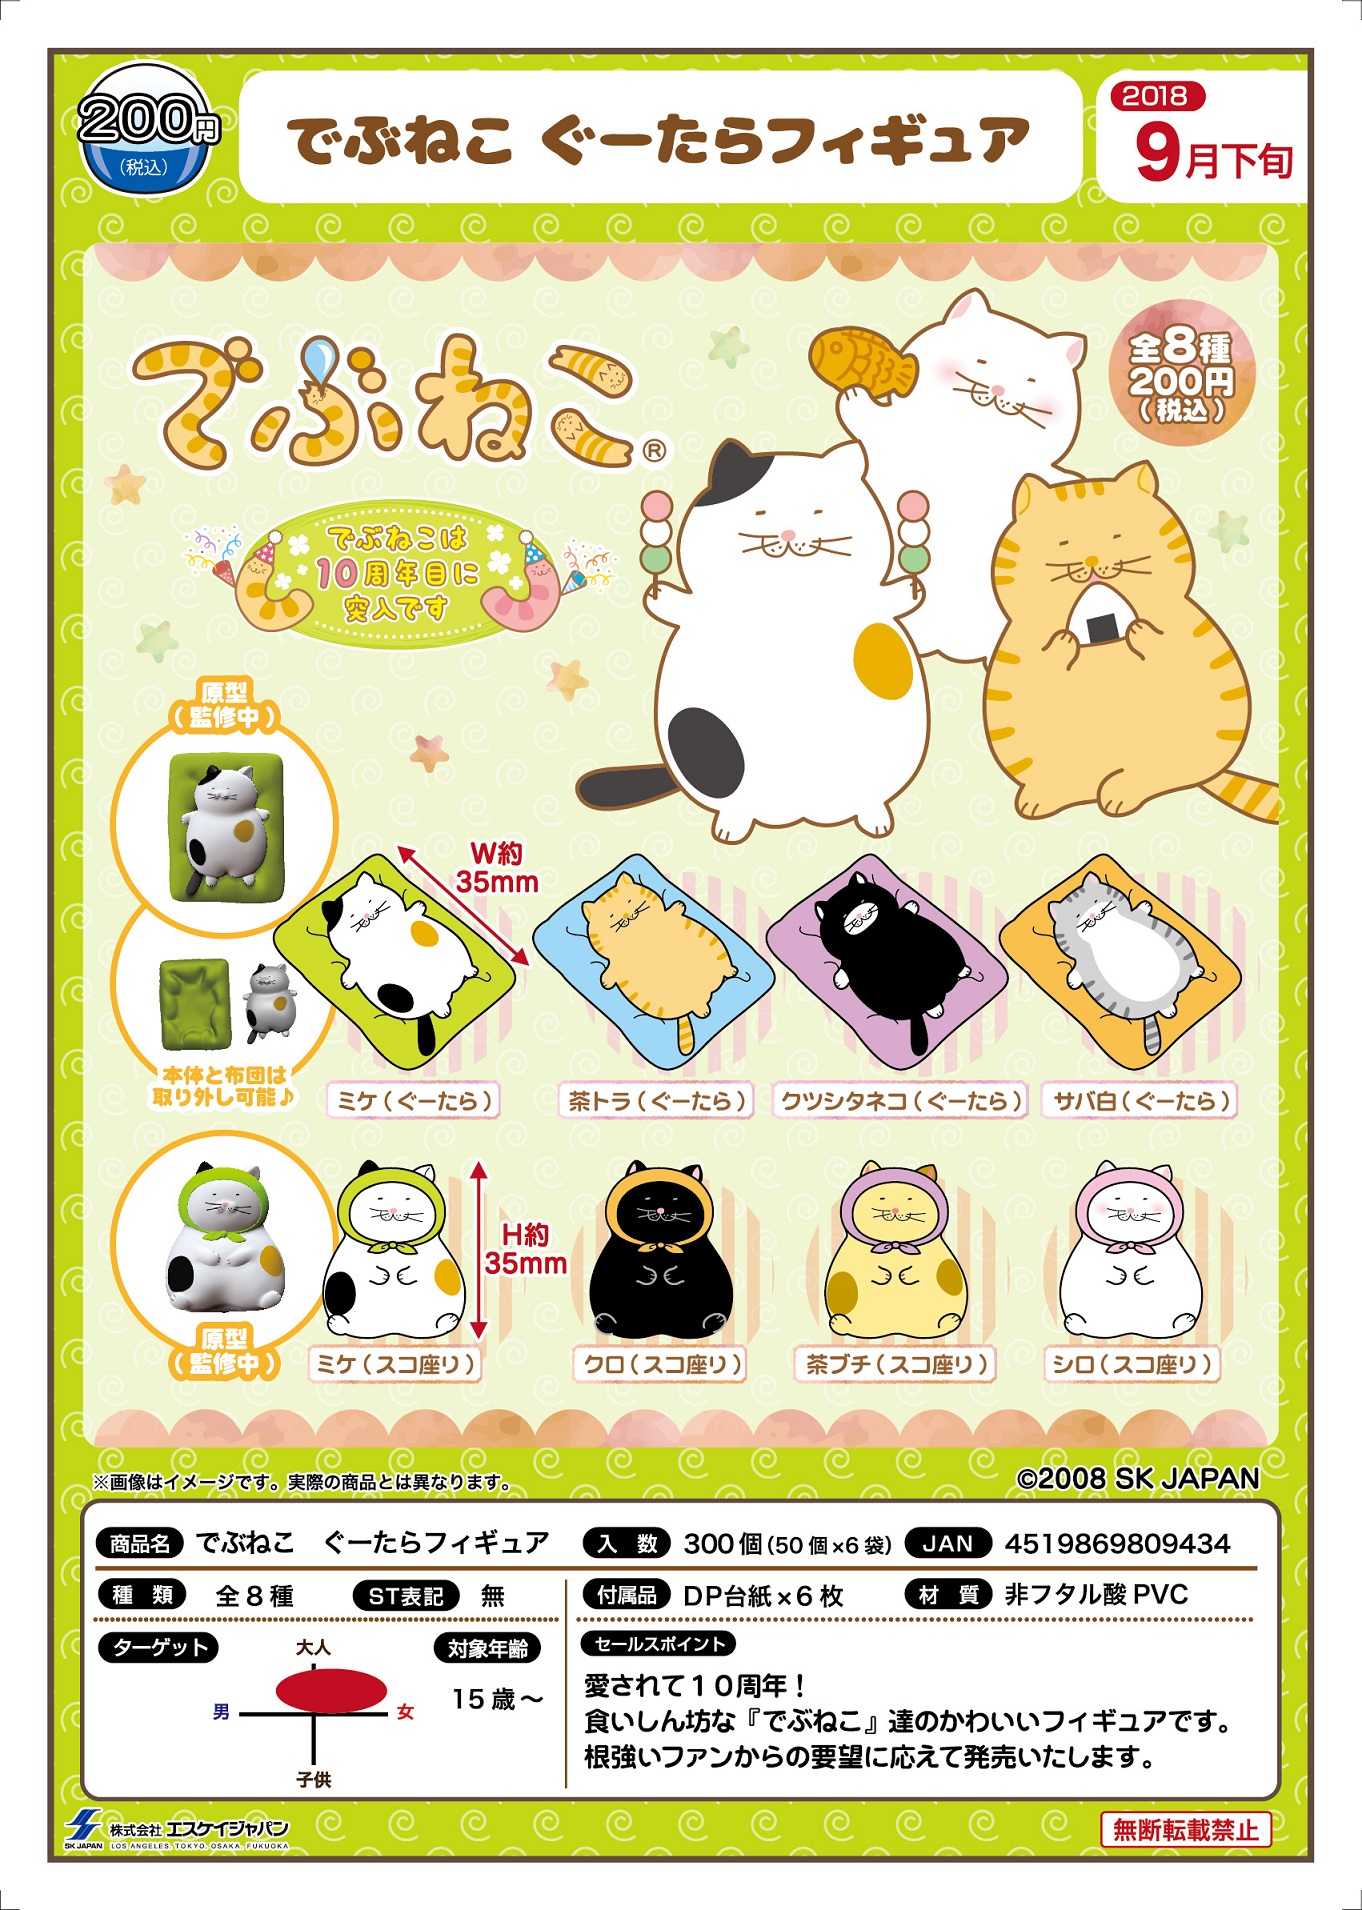 200日元扭蛋 小手办 胖猫猫 悠闲Ver. 全8种 809434